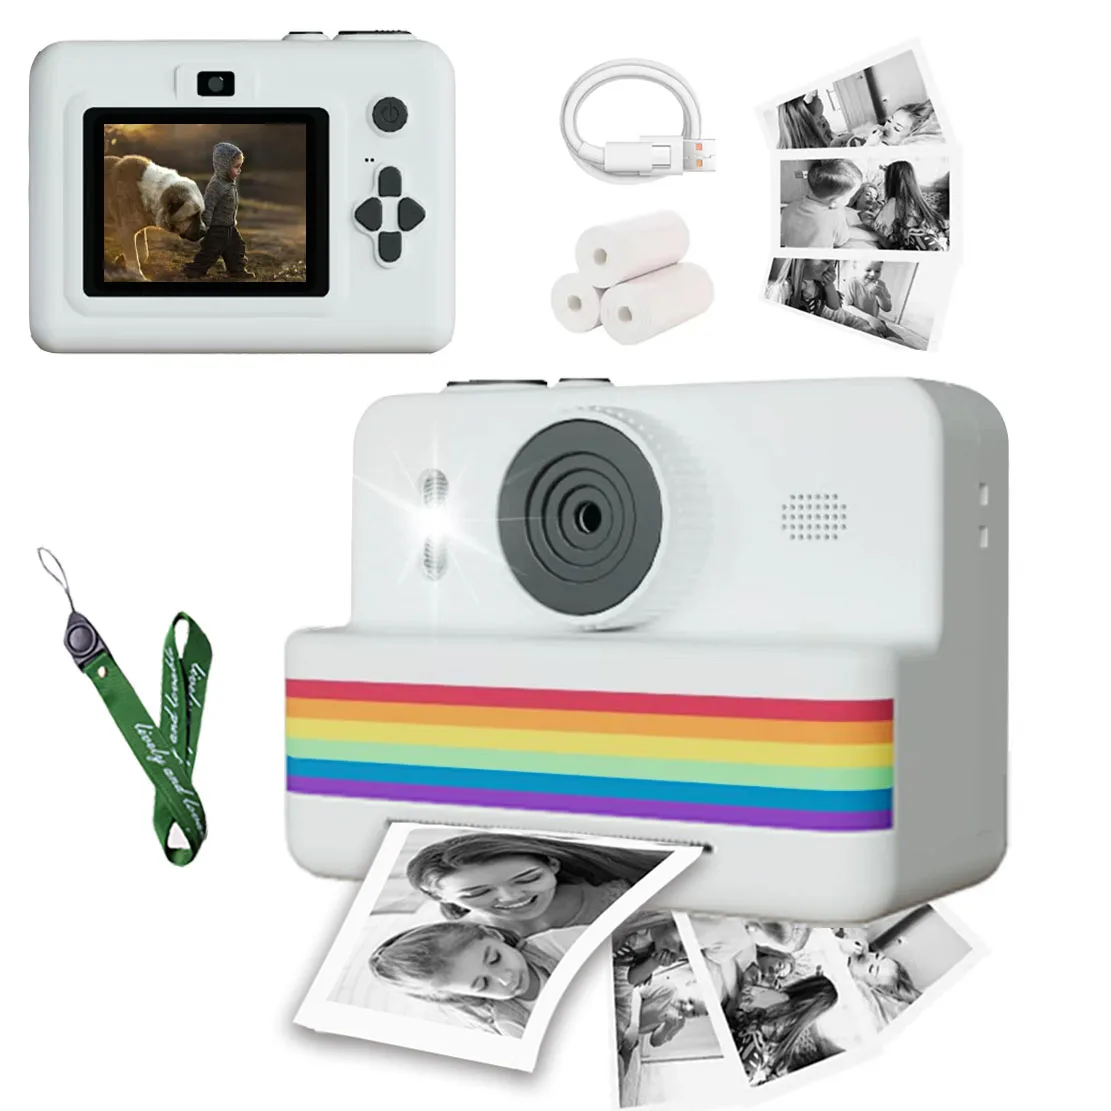 어린이용 디지털 카메라, 휴대용 열화상 즉석 인쇄, 사진 미니 프린터, 2.8 인치 HD 비디오, 장난감 선물